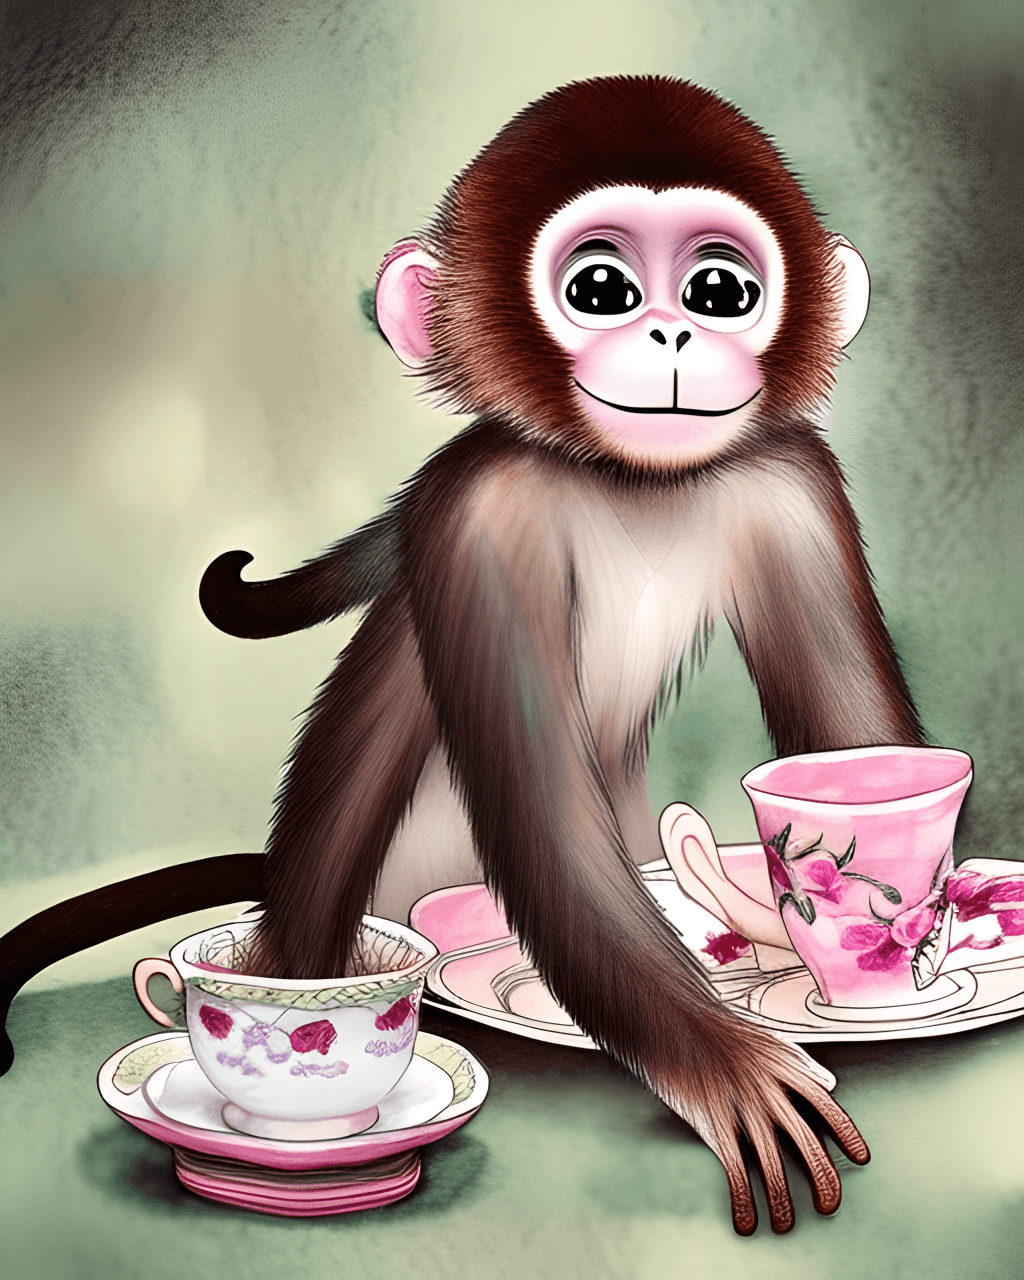 Macacos fofos em uma festa de chá · Creative Fabrica